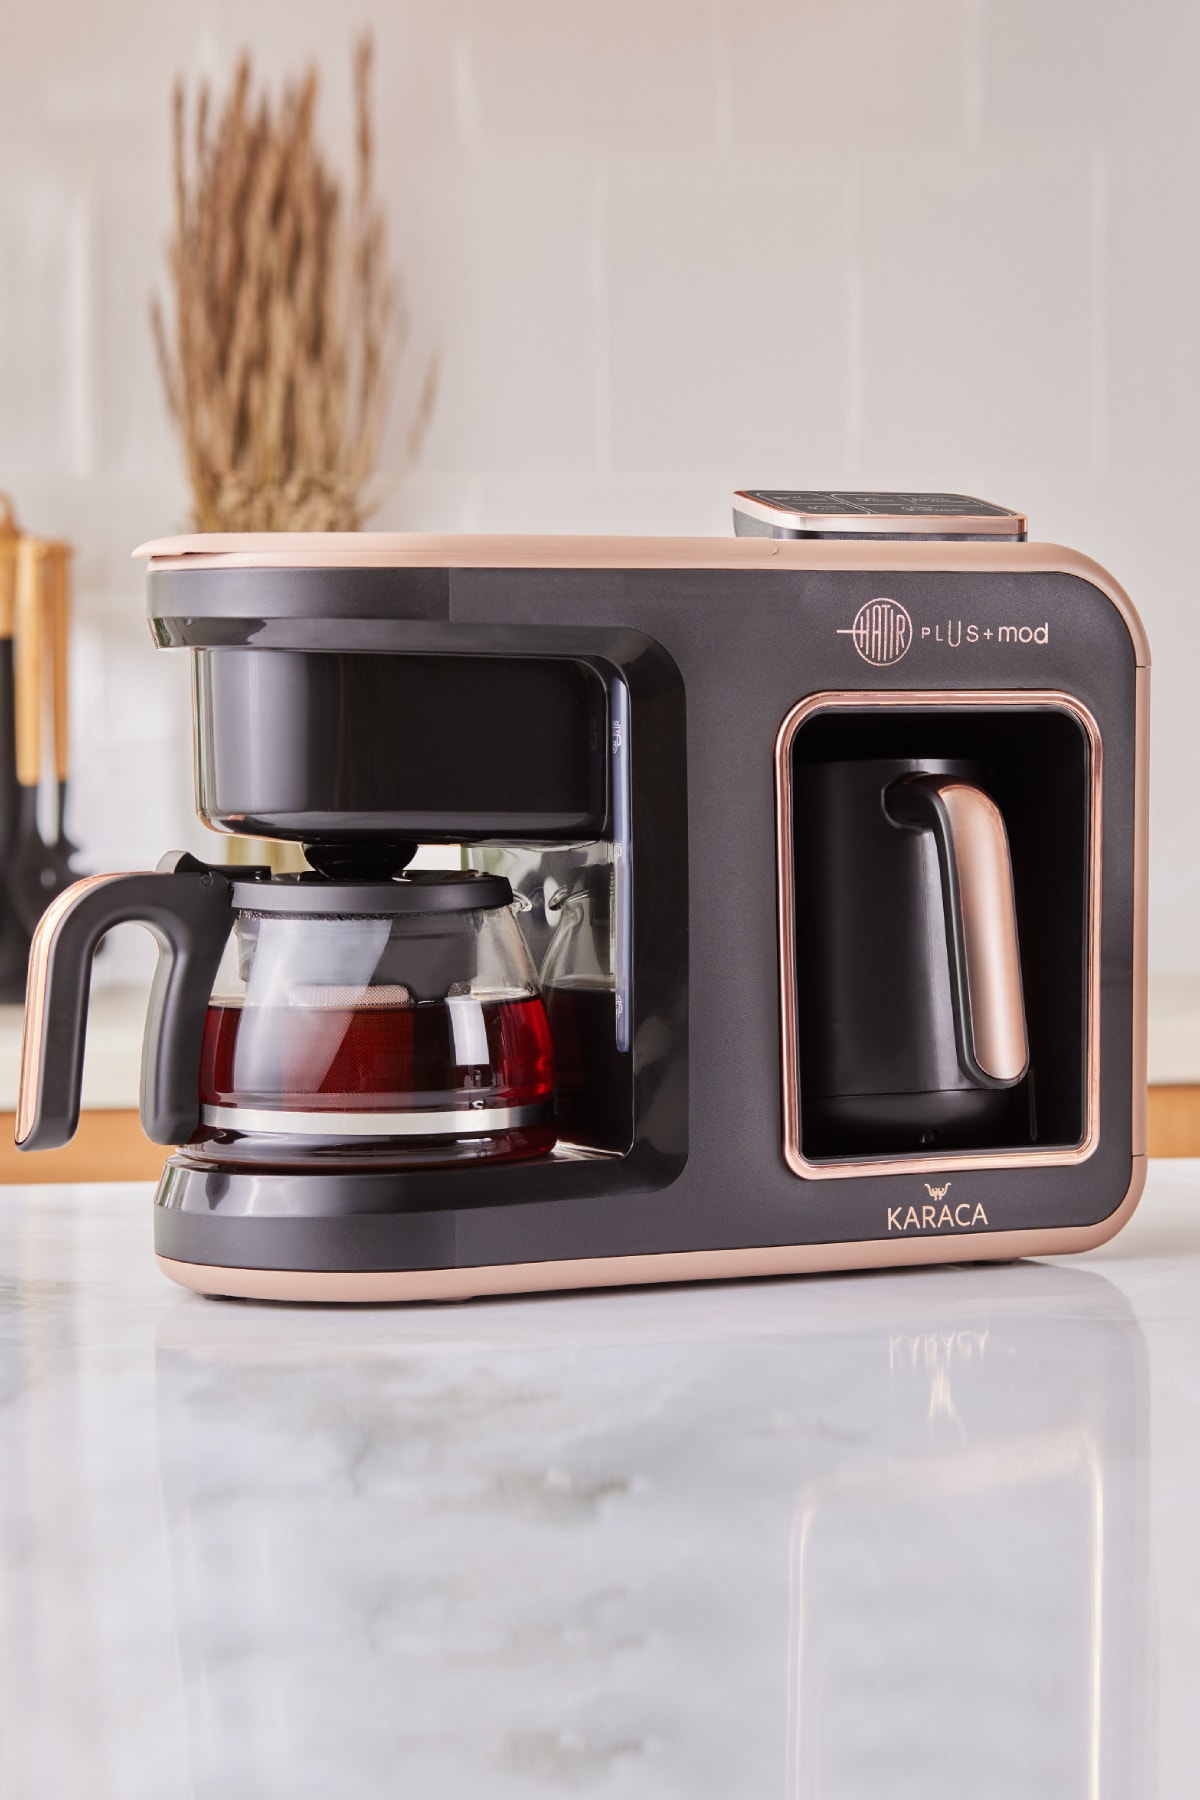 Karaca Hatır Plus Mod 5 In 1 Konuşan Kahve Ve Çay Makinesi Rosie Brown ,  -